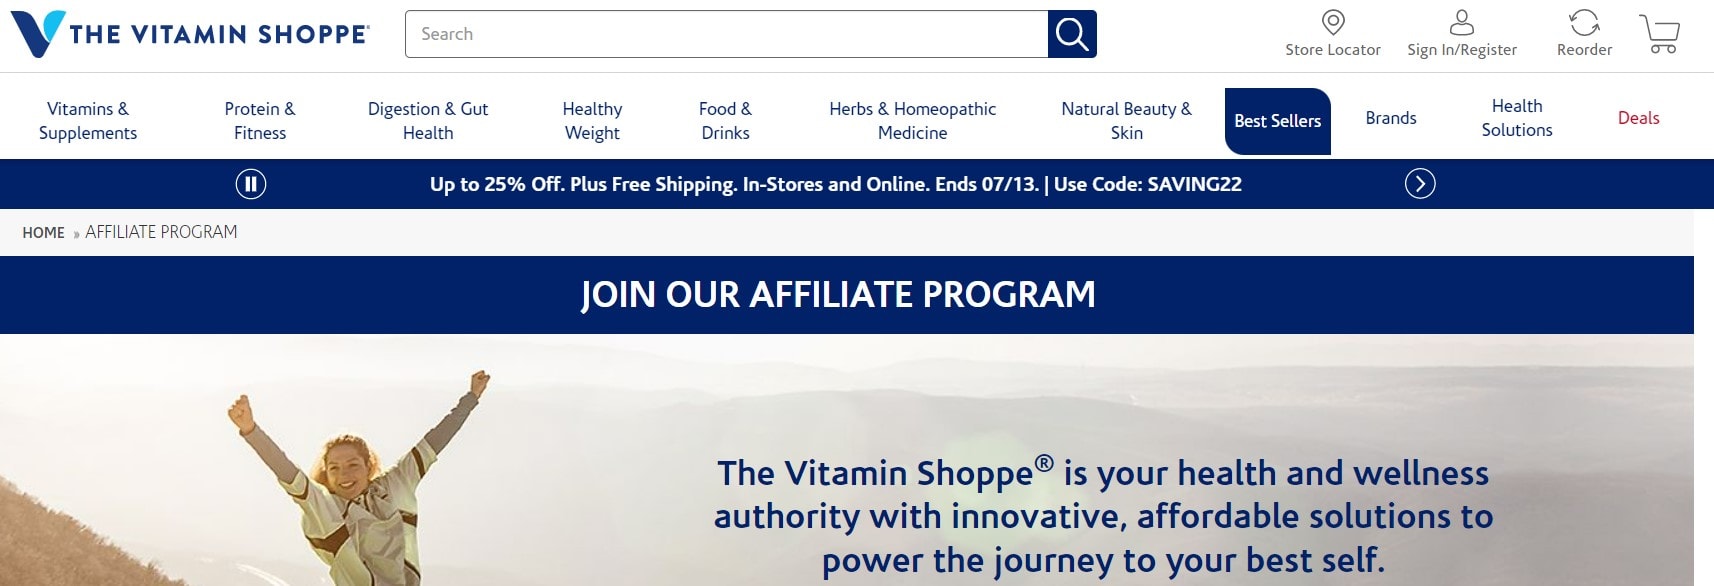 The Vitamin Shoppe affiliate program